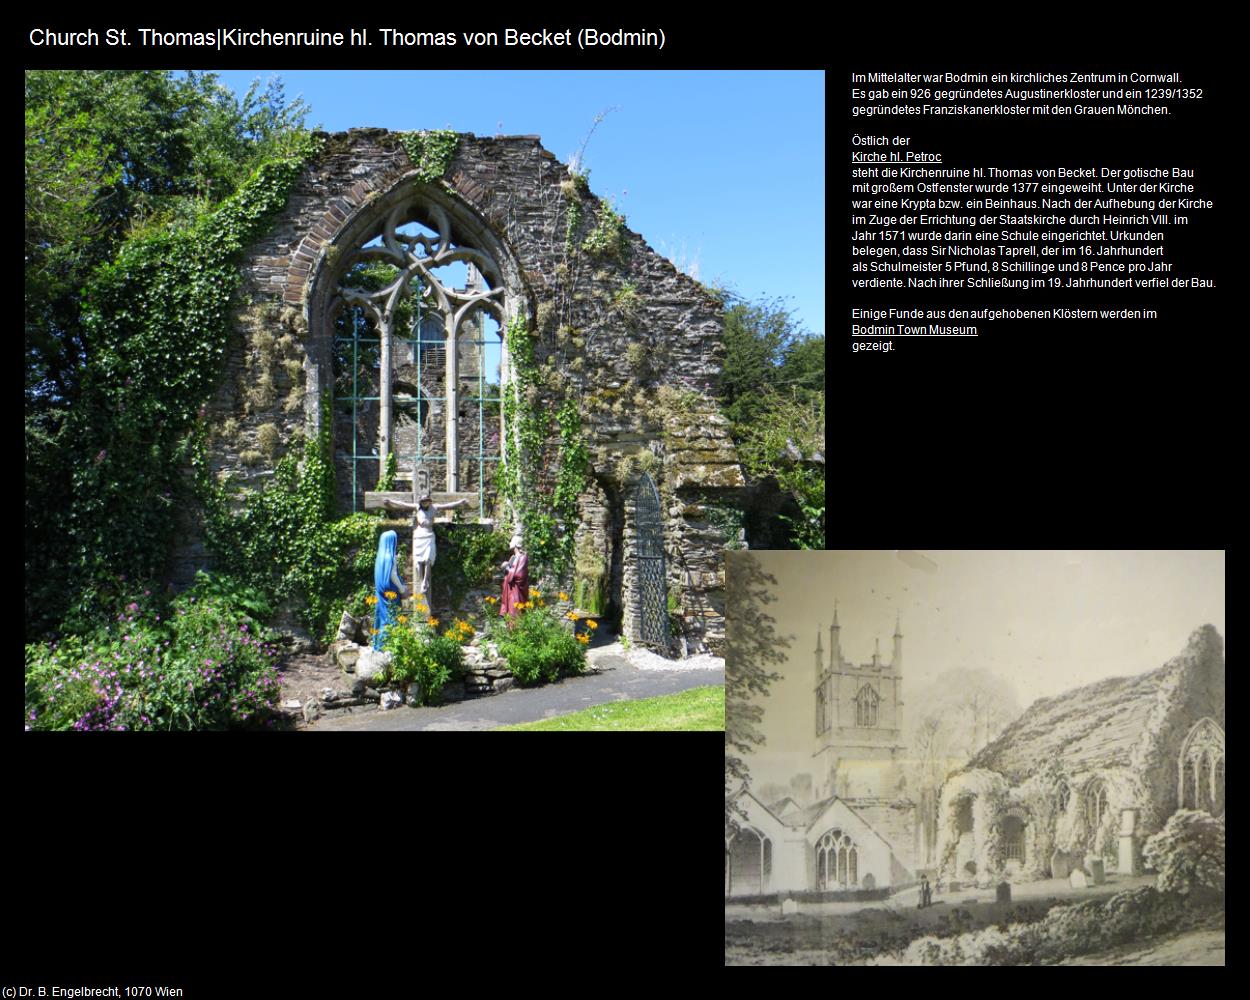 Church St. Thomas|Kirchenruine hl. Thomas von Becket (Bodmin, England) in Kulturatlas-ENGLAND und WALES(c)B.Engelbrecht